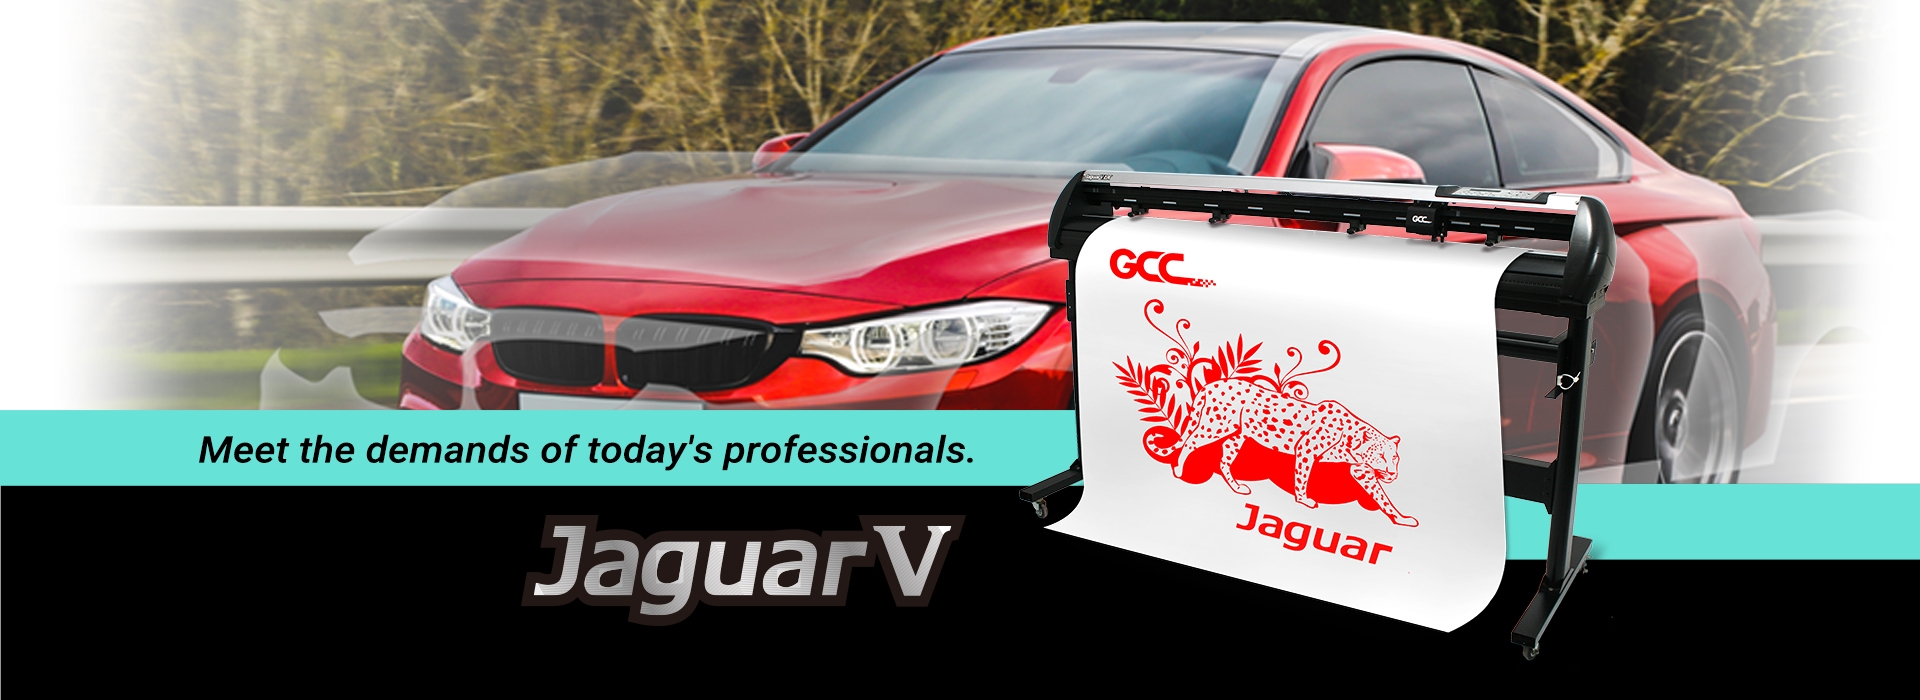 Jaguar V / Jaguar V (PPF) Vinyl Cutter